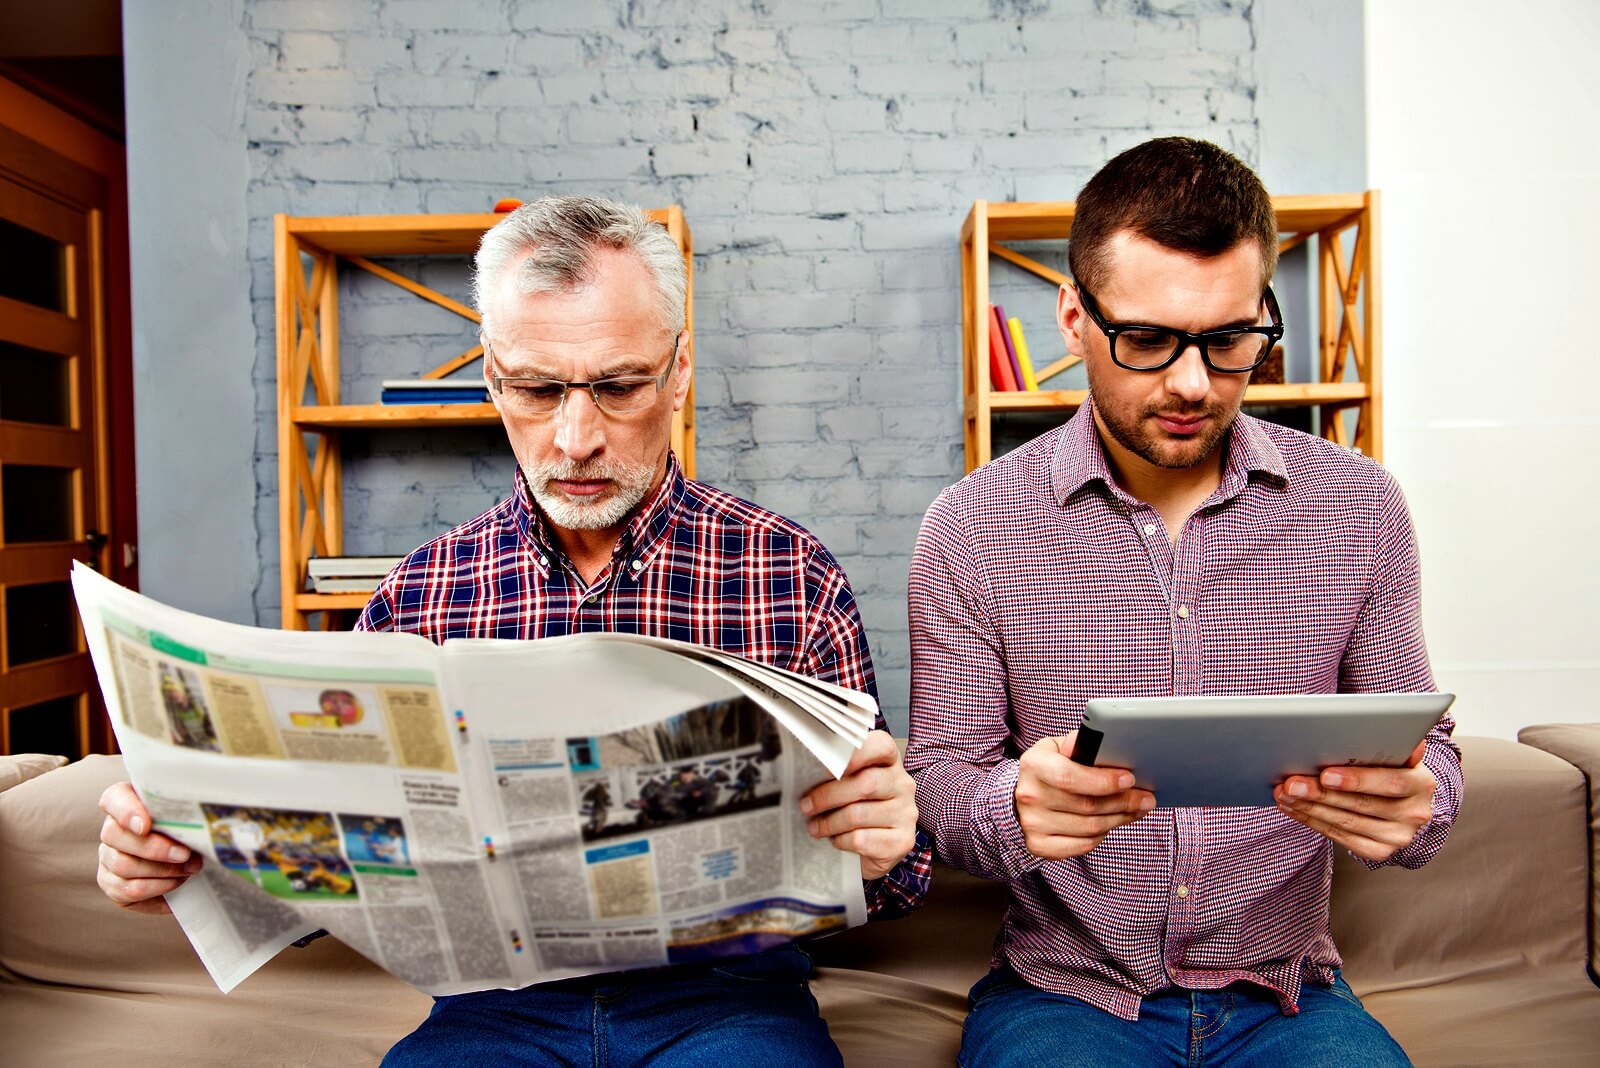 Read the internet. Человек читает газету. Человек с газетой. Мужчина с газетой. Человек читает новости в интернете.